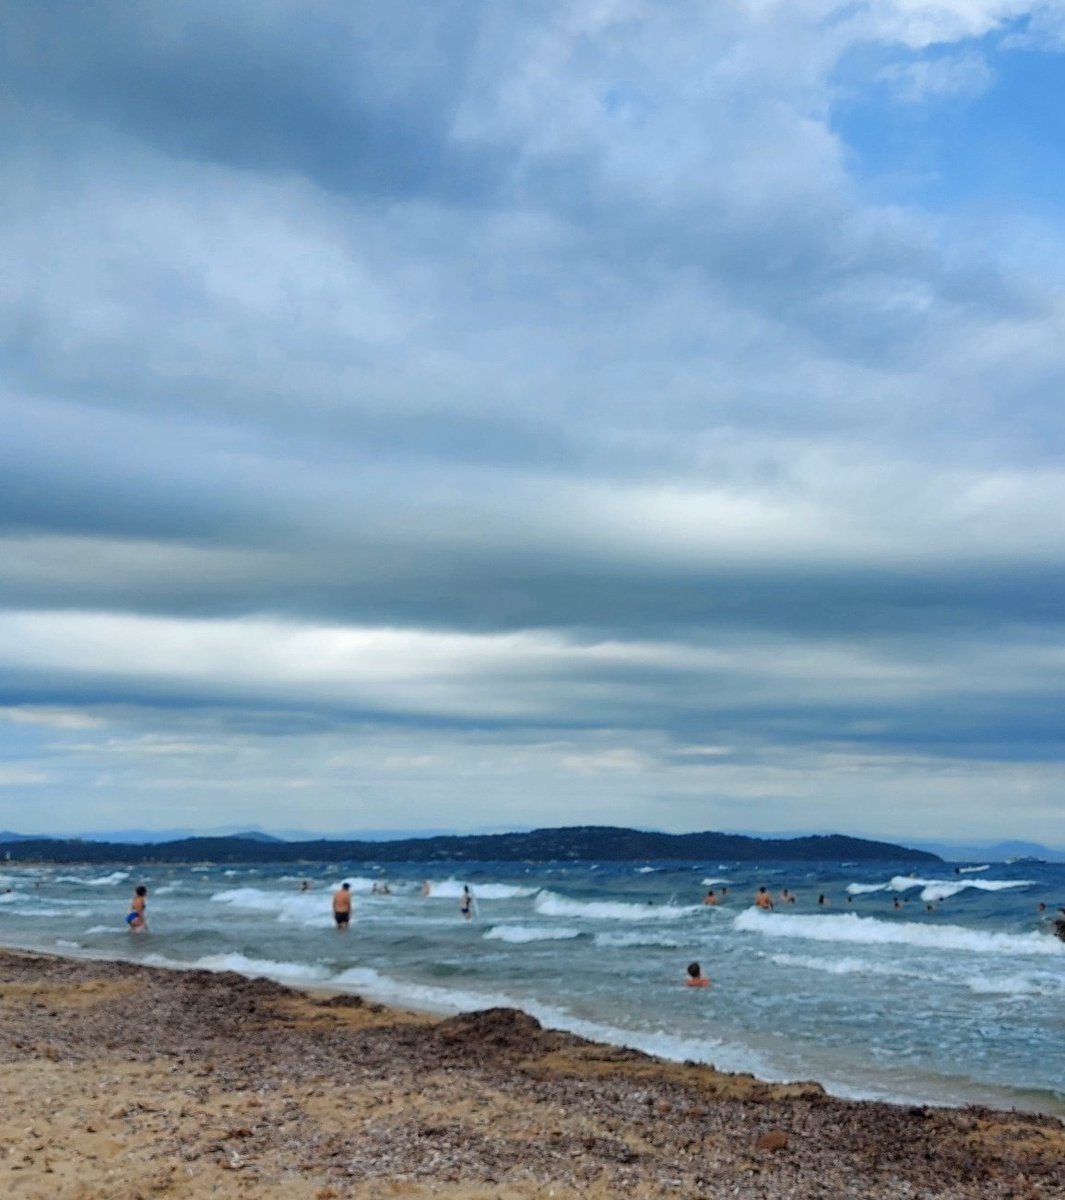 #RaccontoUnLuogo il mare in tempesta
@CasaLettori 

📸mia  La Pampelonne